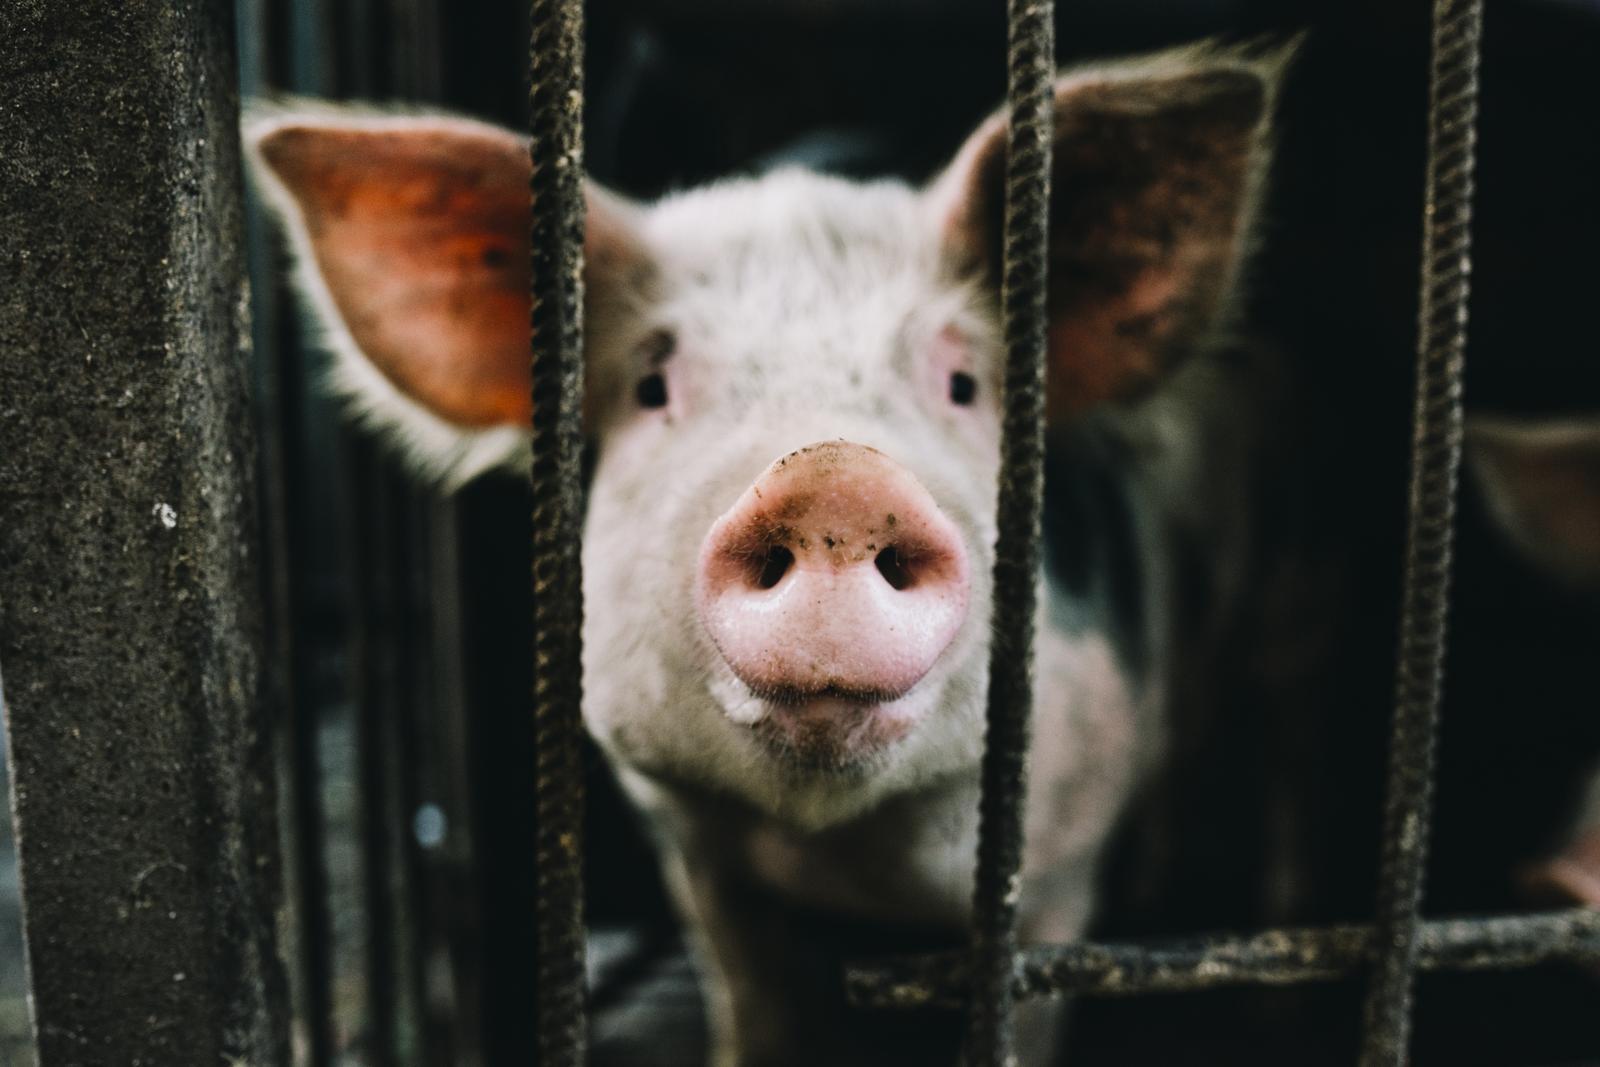 Raising of swine/pigs in Tapa vald